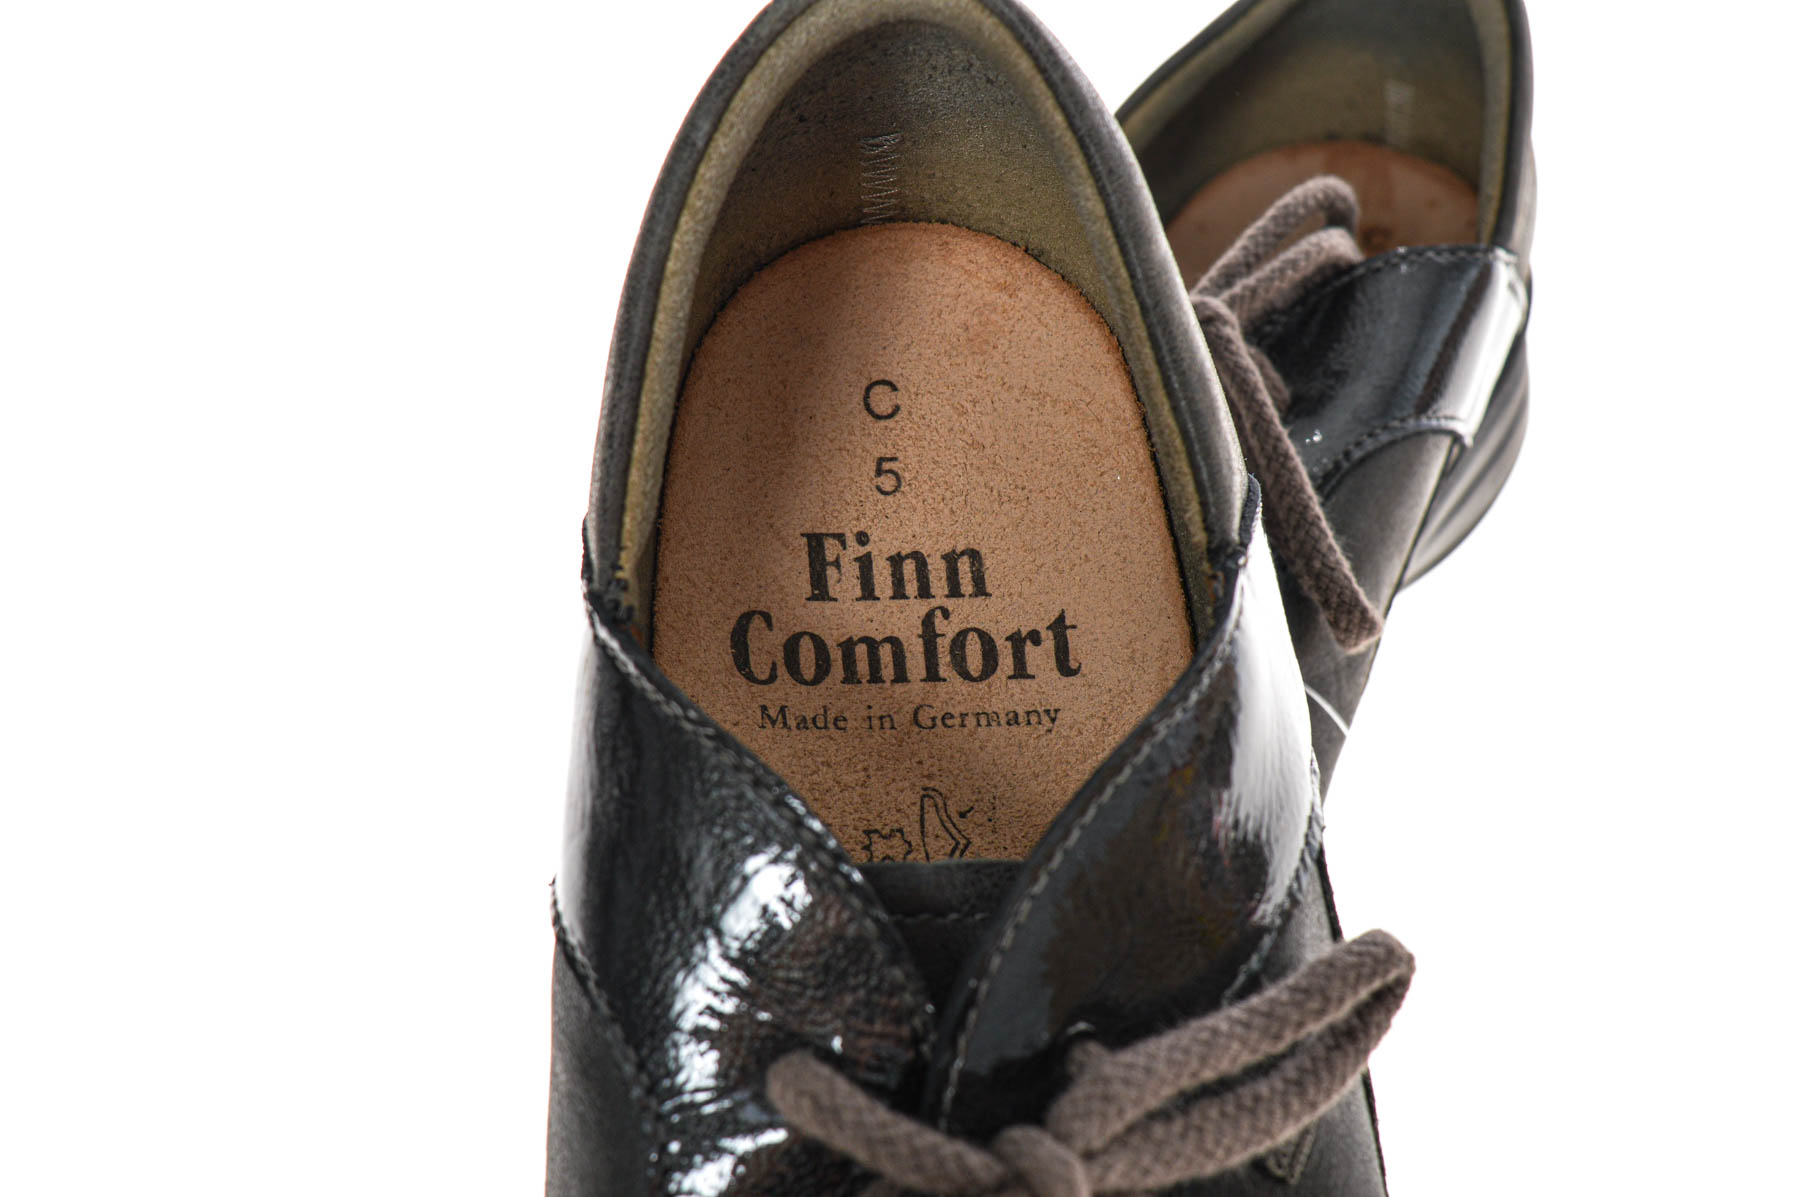 Γυναικεία παπούτσια- Finn Comfort - 4